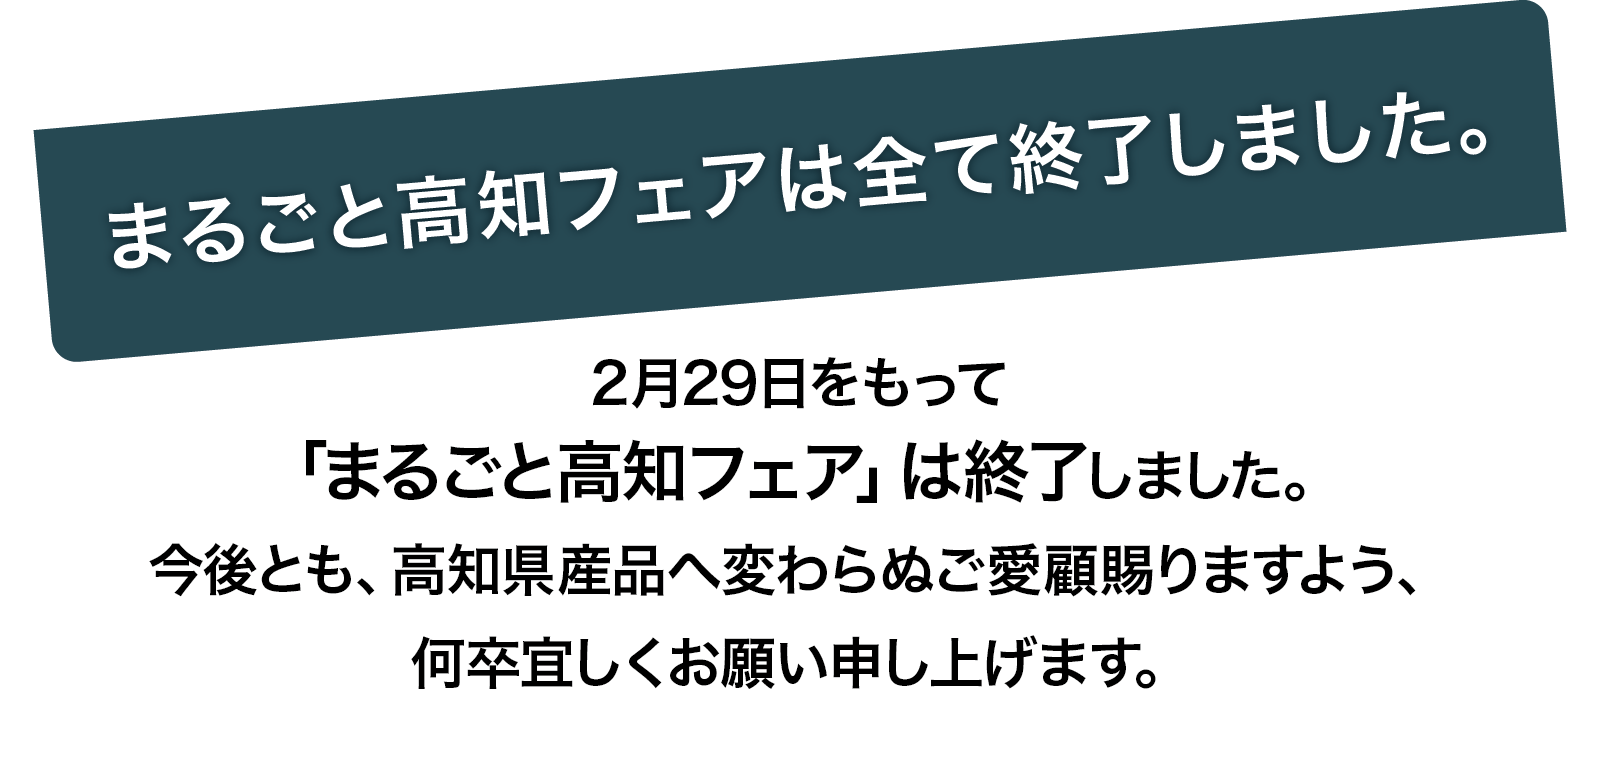 2月29日をもって「まるごと高知フェア」は終了しました。今後とも、高知県産品へ変わらぬご愛顧賜りますよう、何卒宜しくお願い申し上げます。